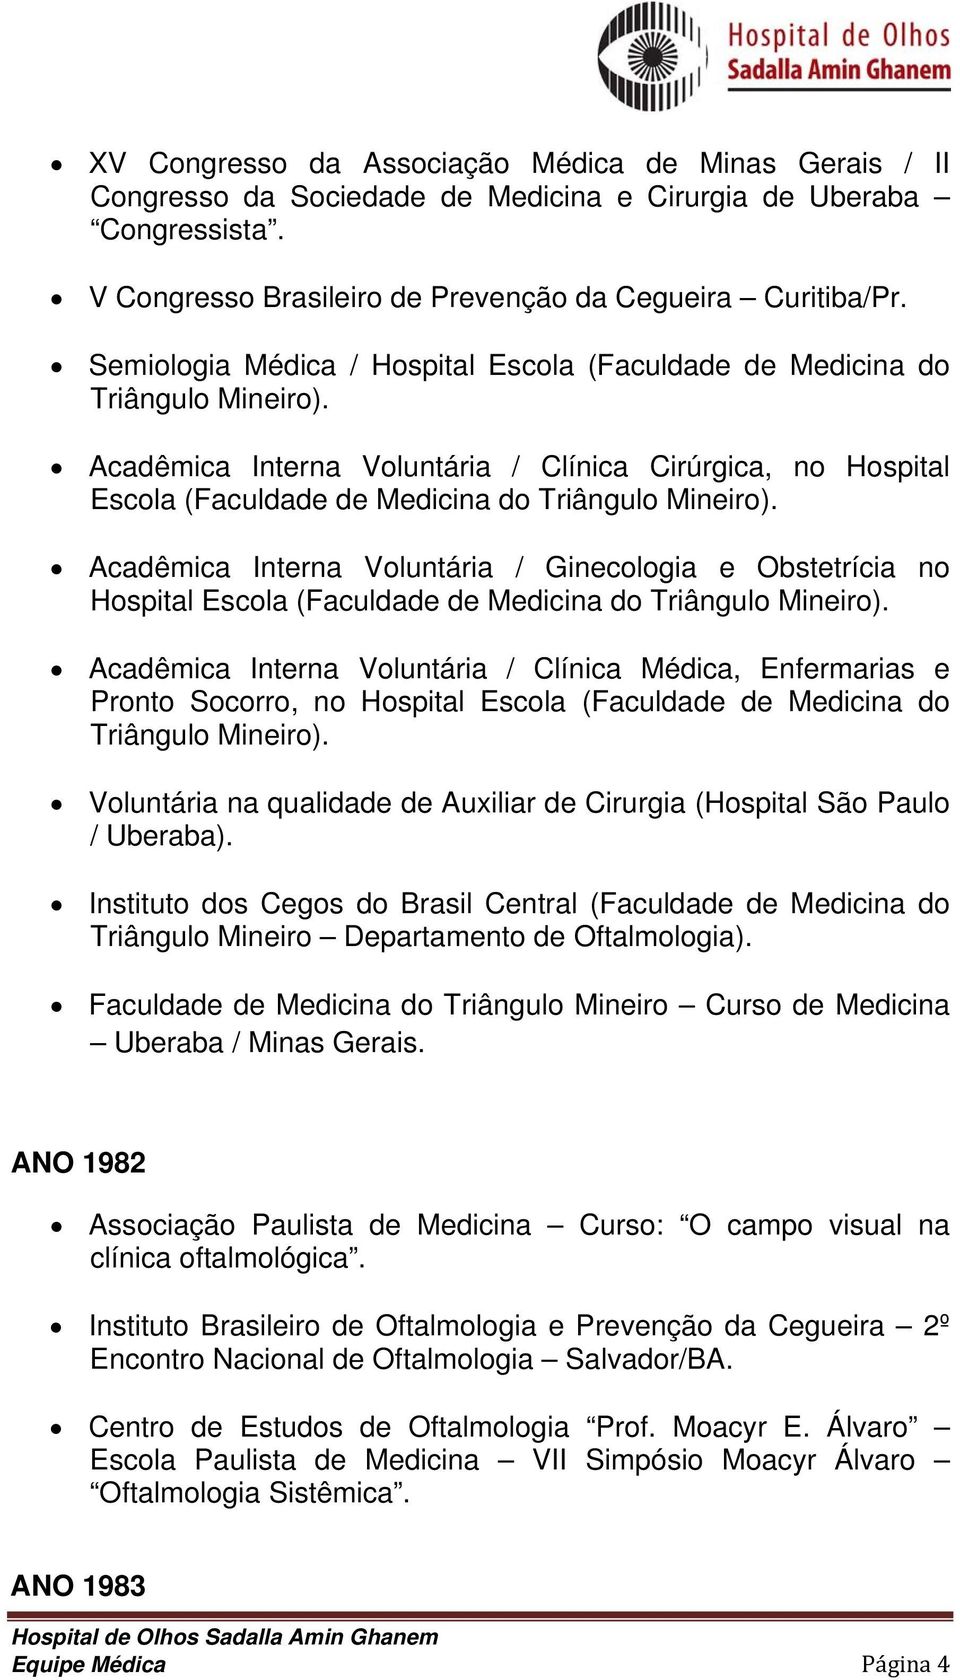 Acadêmica Interna Voluntária / Ginecologia e Obstetrícia no Hospital Escola (Faculdade de Medicina do Triângulo Mineiro).